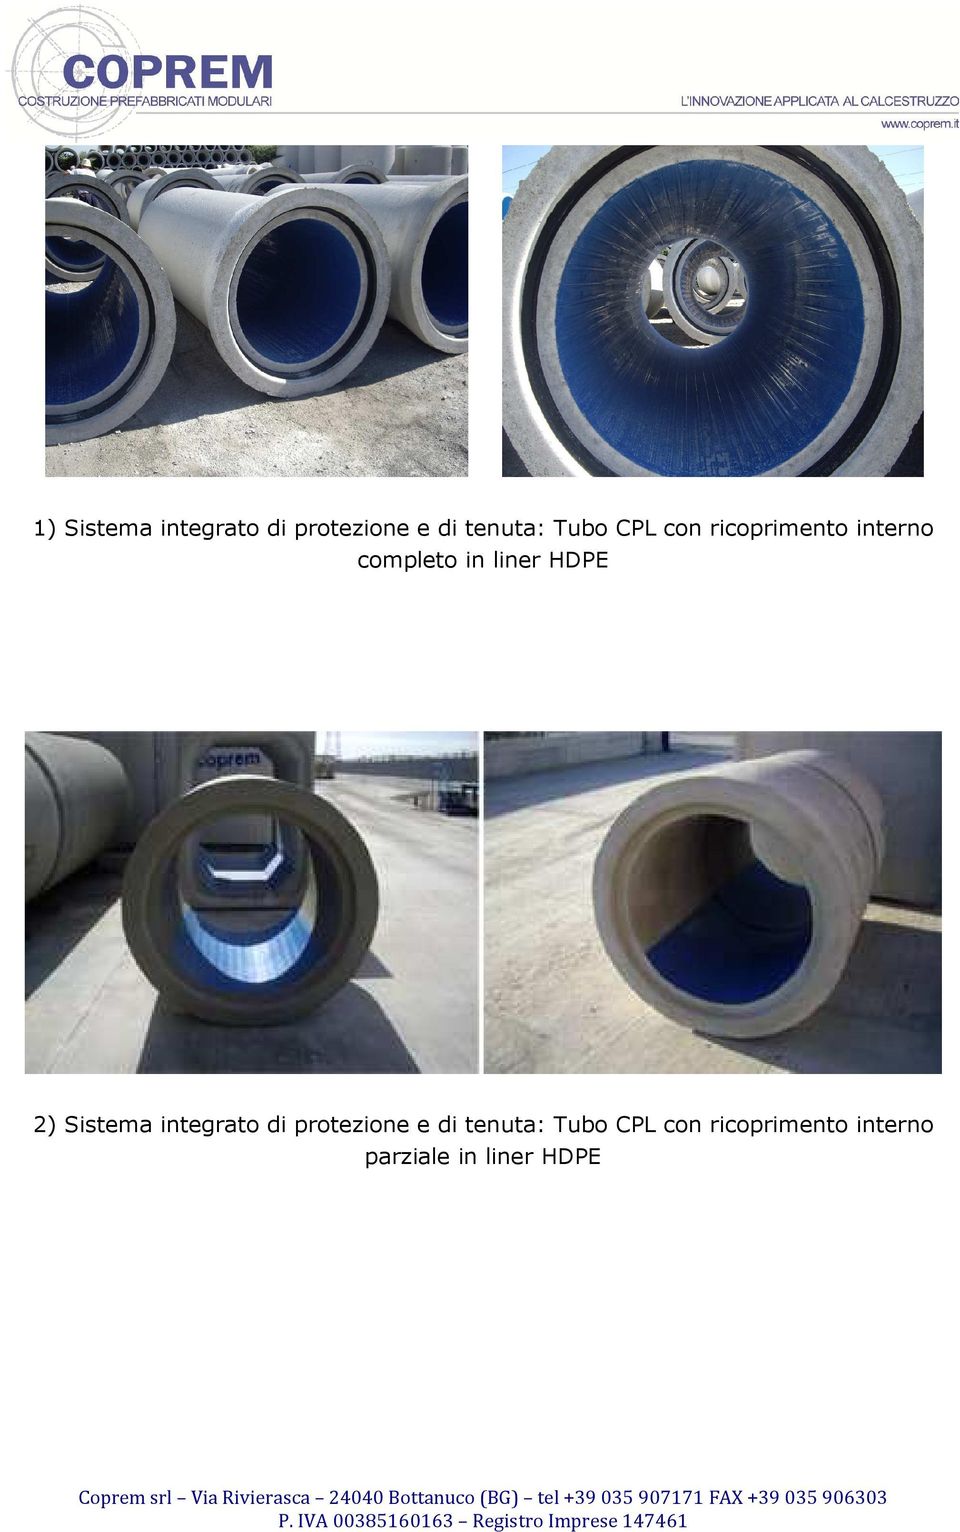 2) Sistema integrato di protezione e di tenuta: Tubo